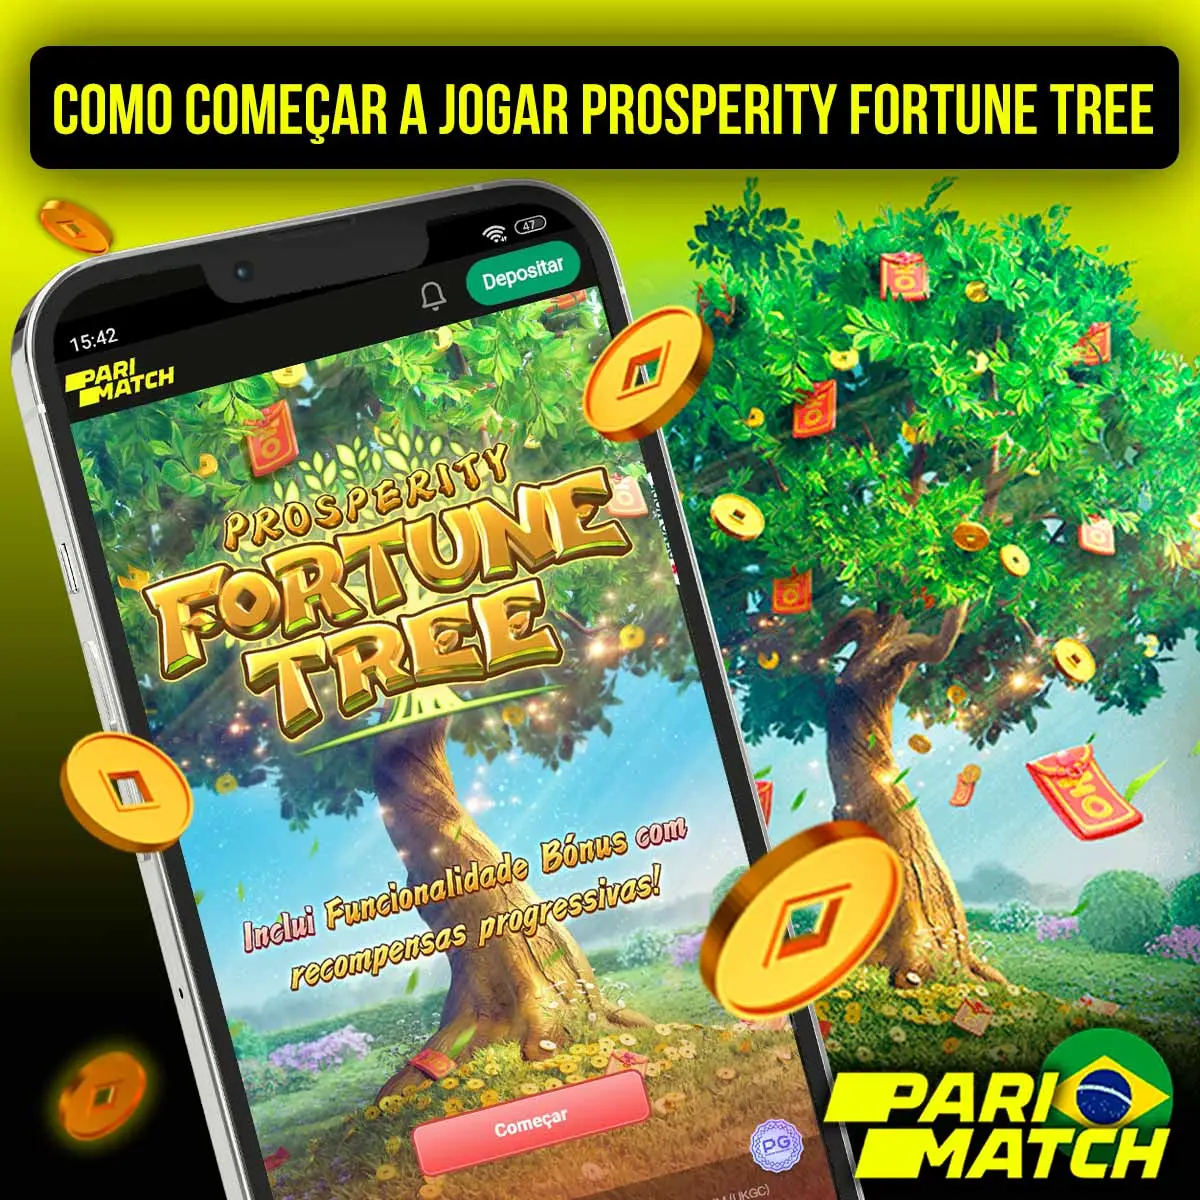 Começar a jogar Prosperity Fortune Tree e fazer uma aposta